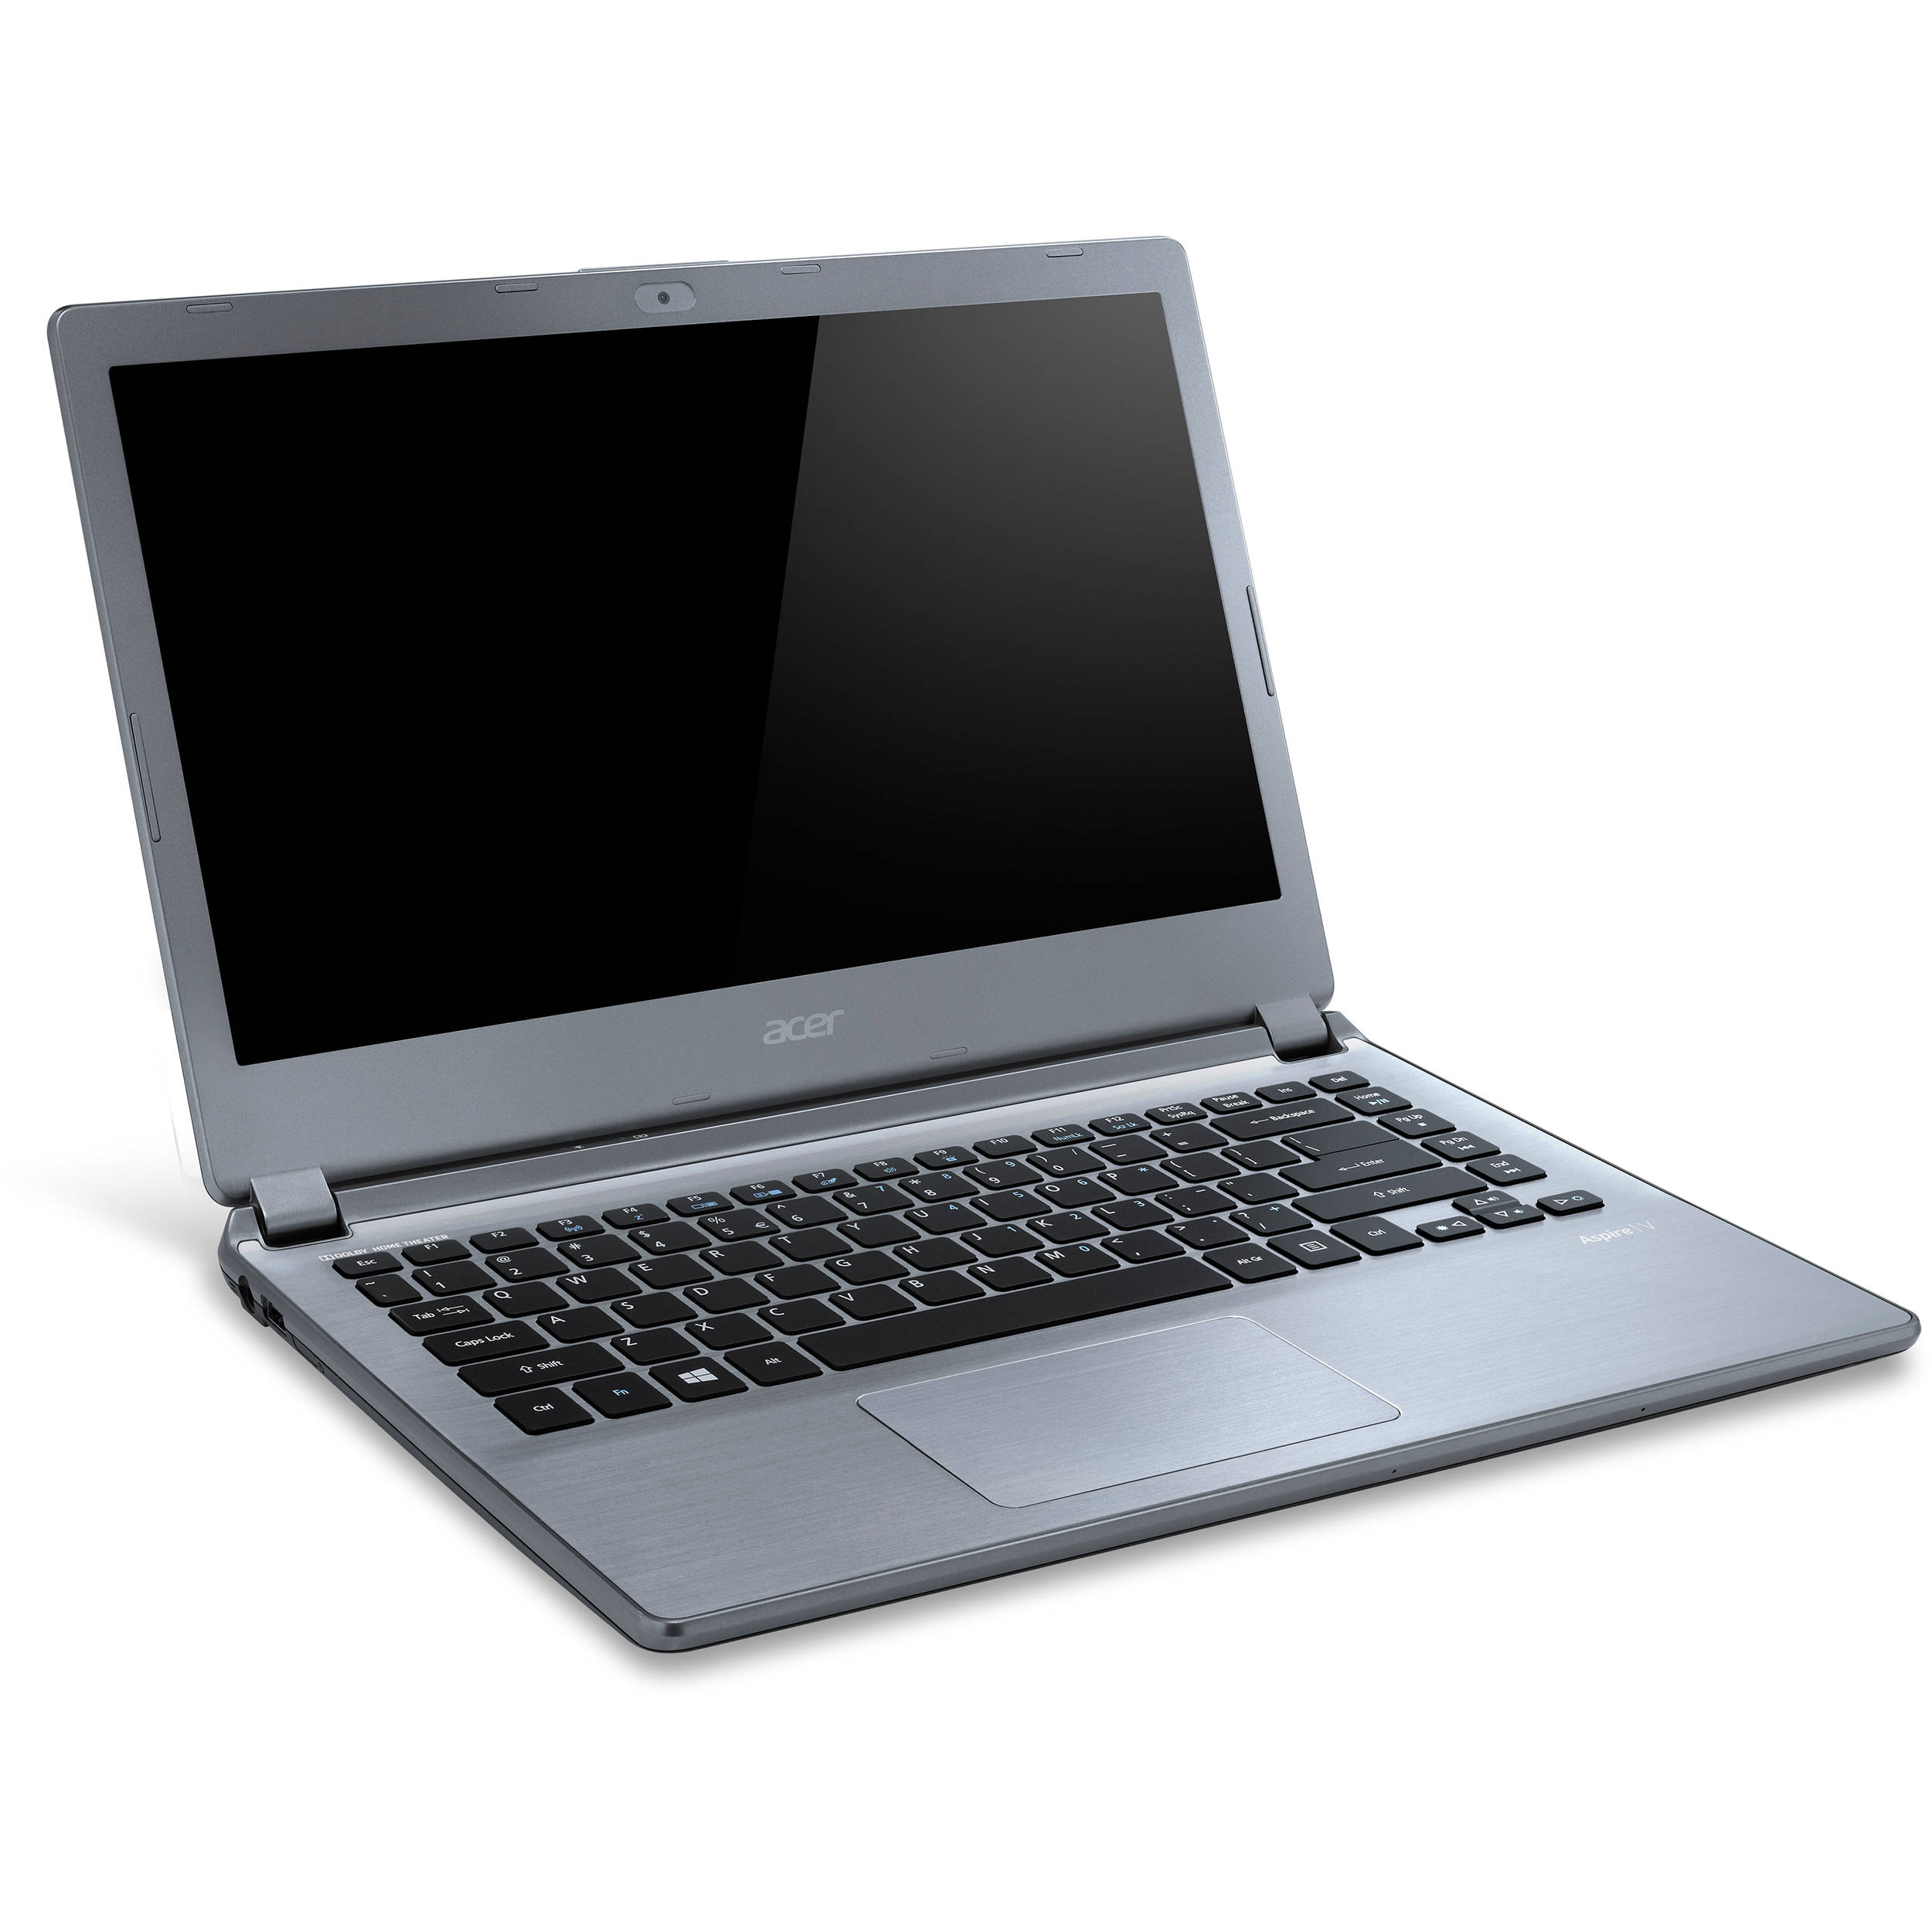 Acer Aspire V7-710 Notebook